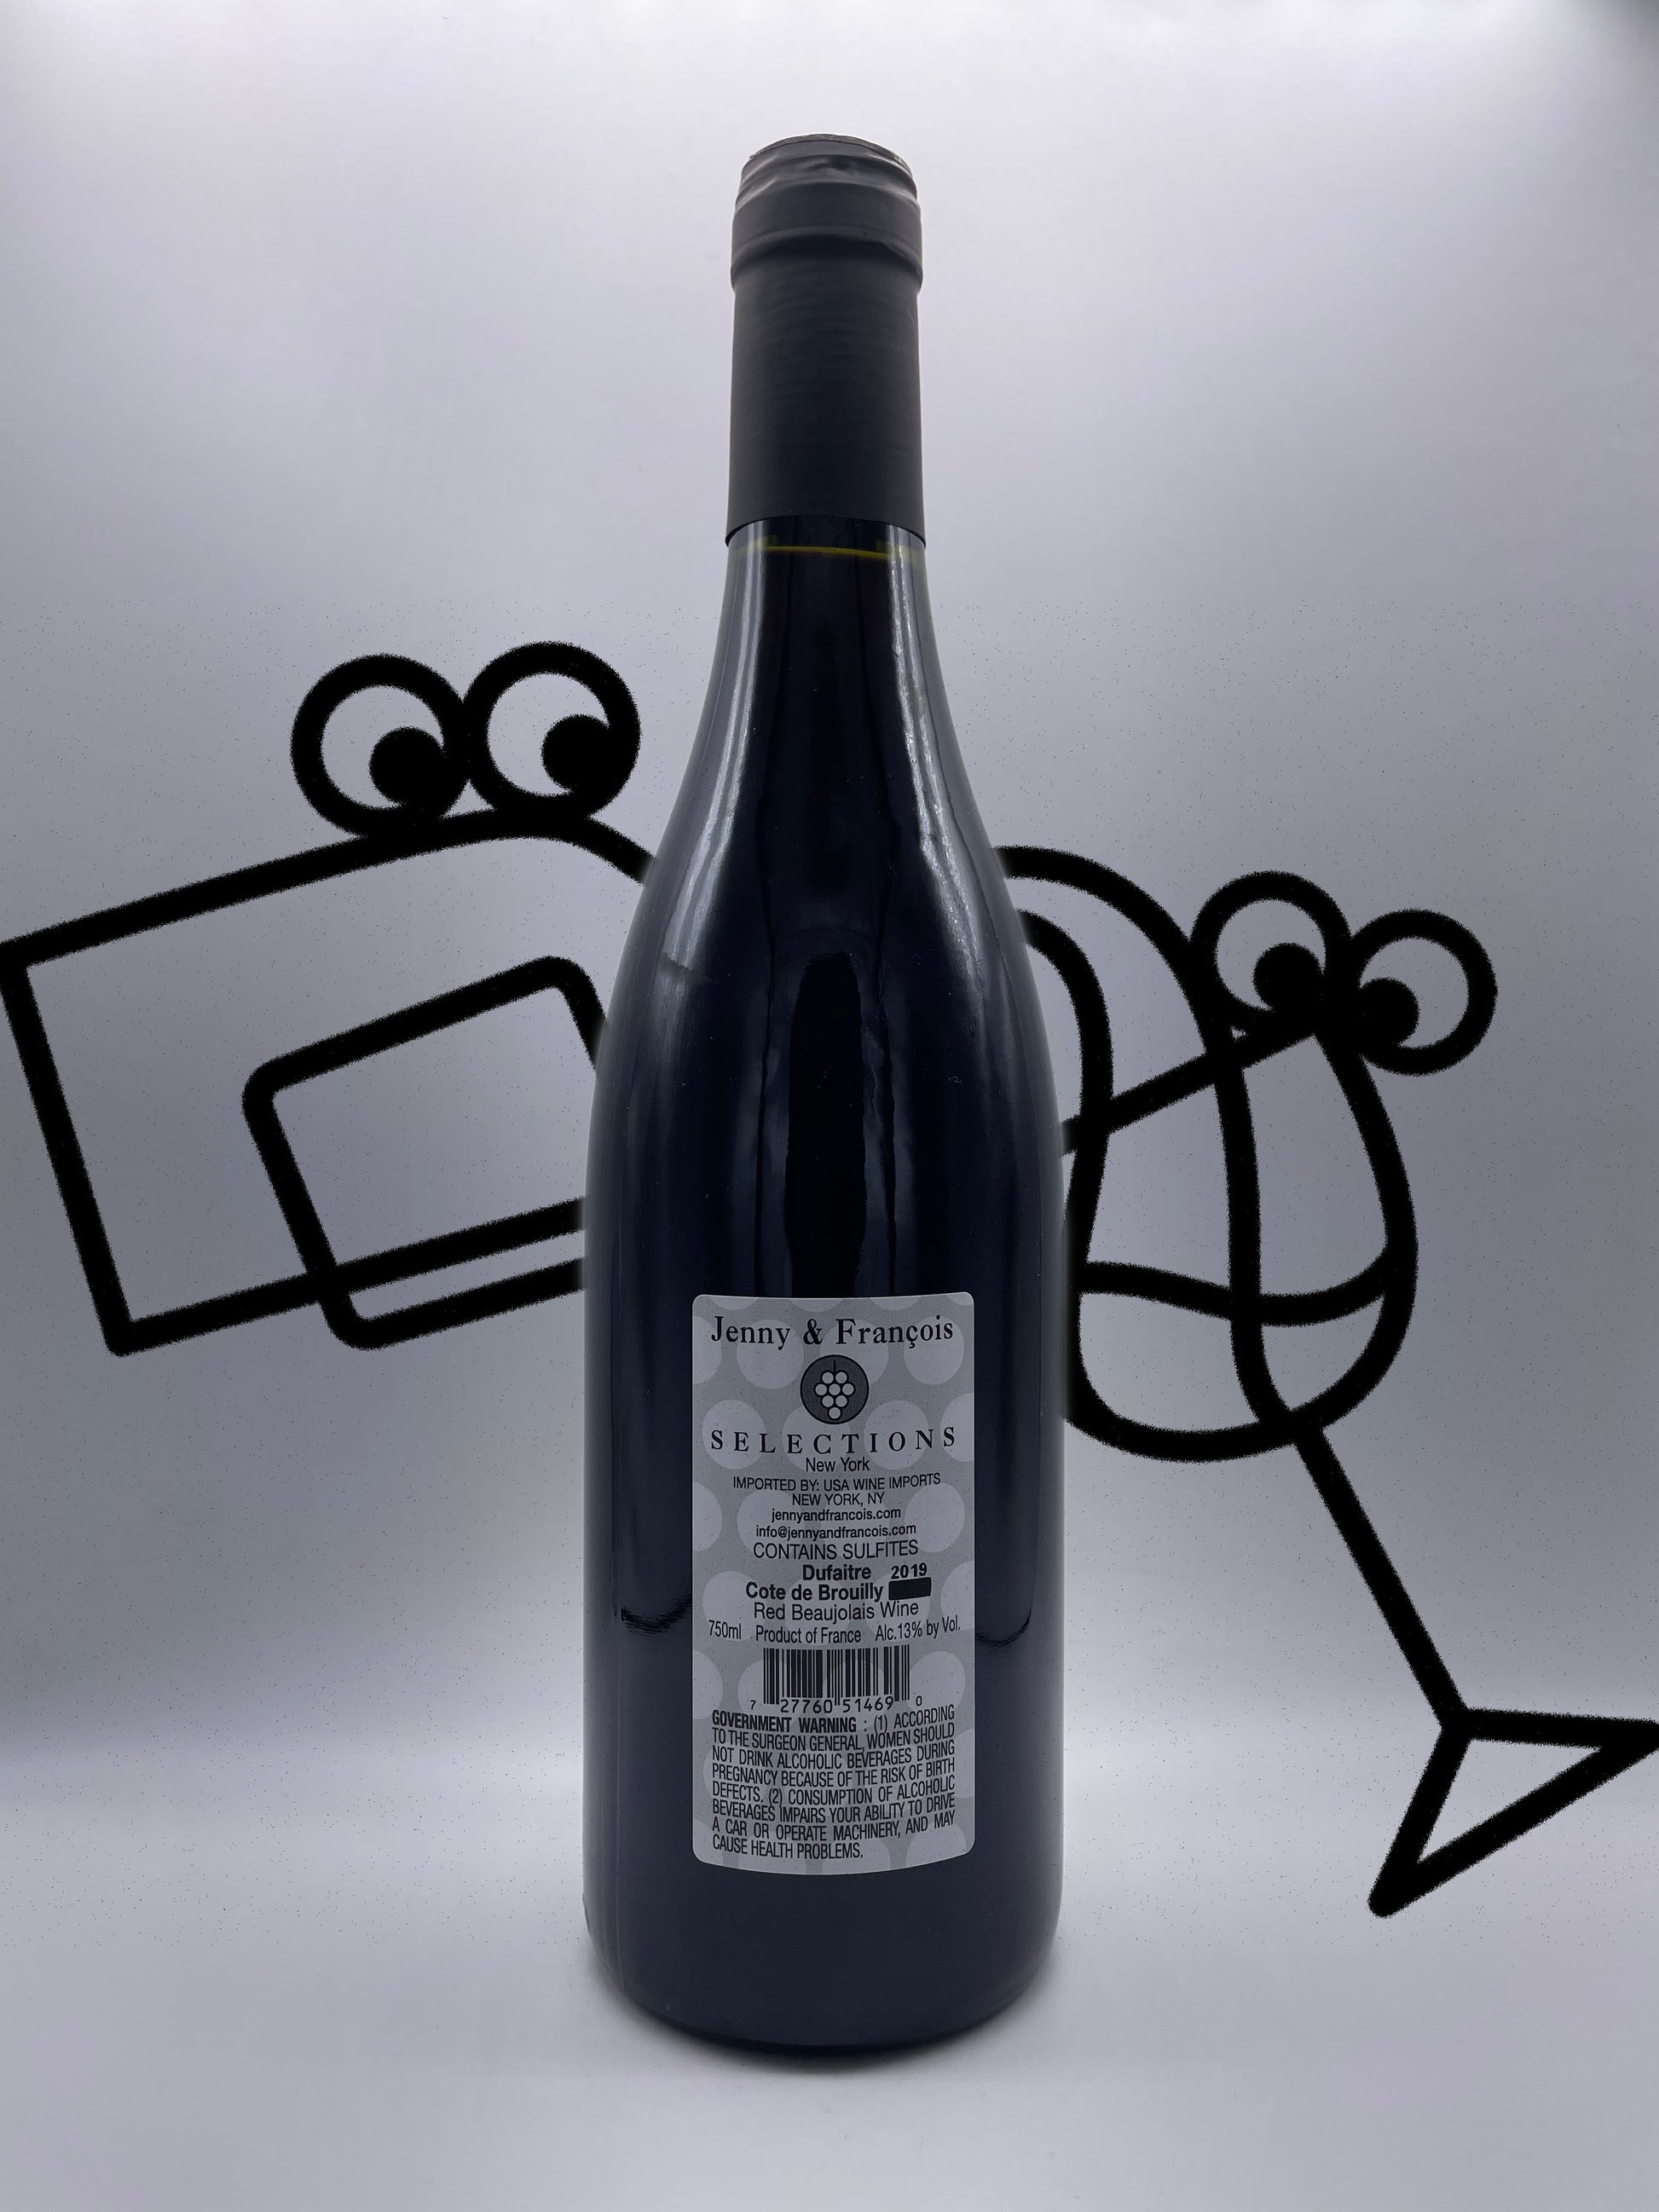 Dufaitre Cote de Brouilly 2019 Beaujolais, France - Williston Park Wines & Spirits